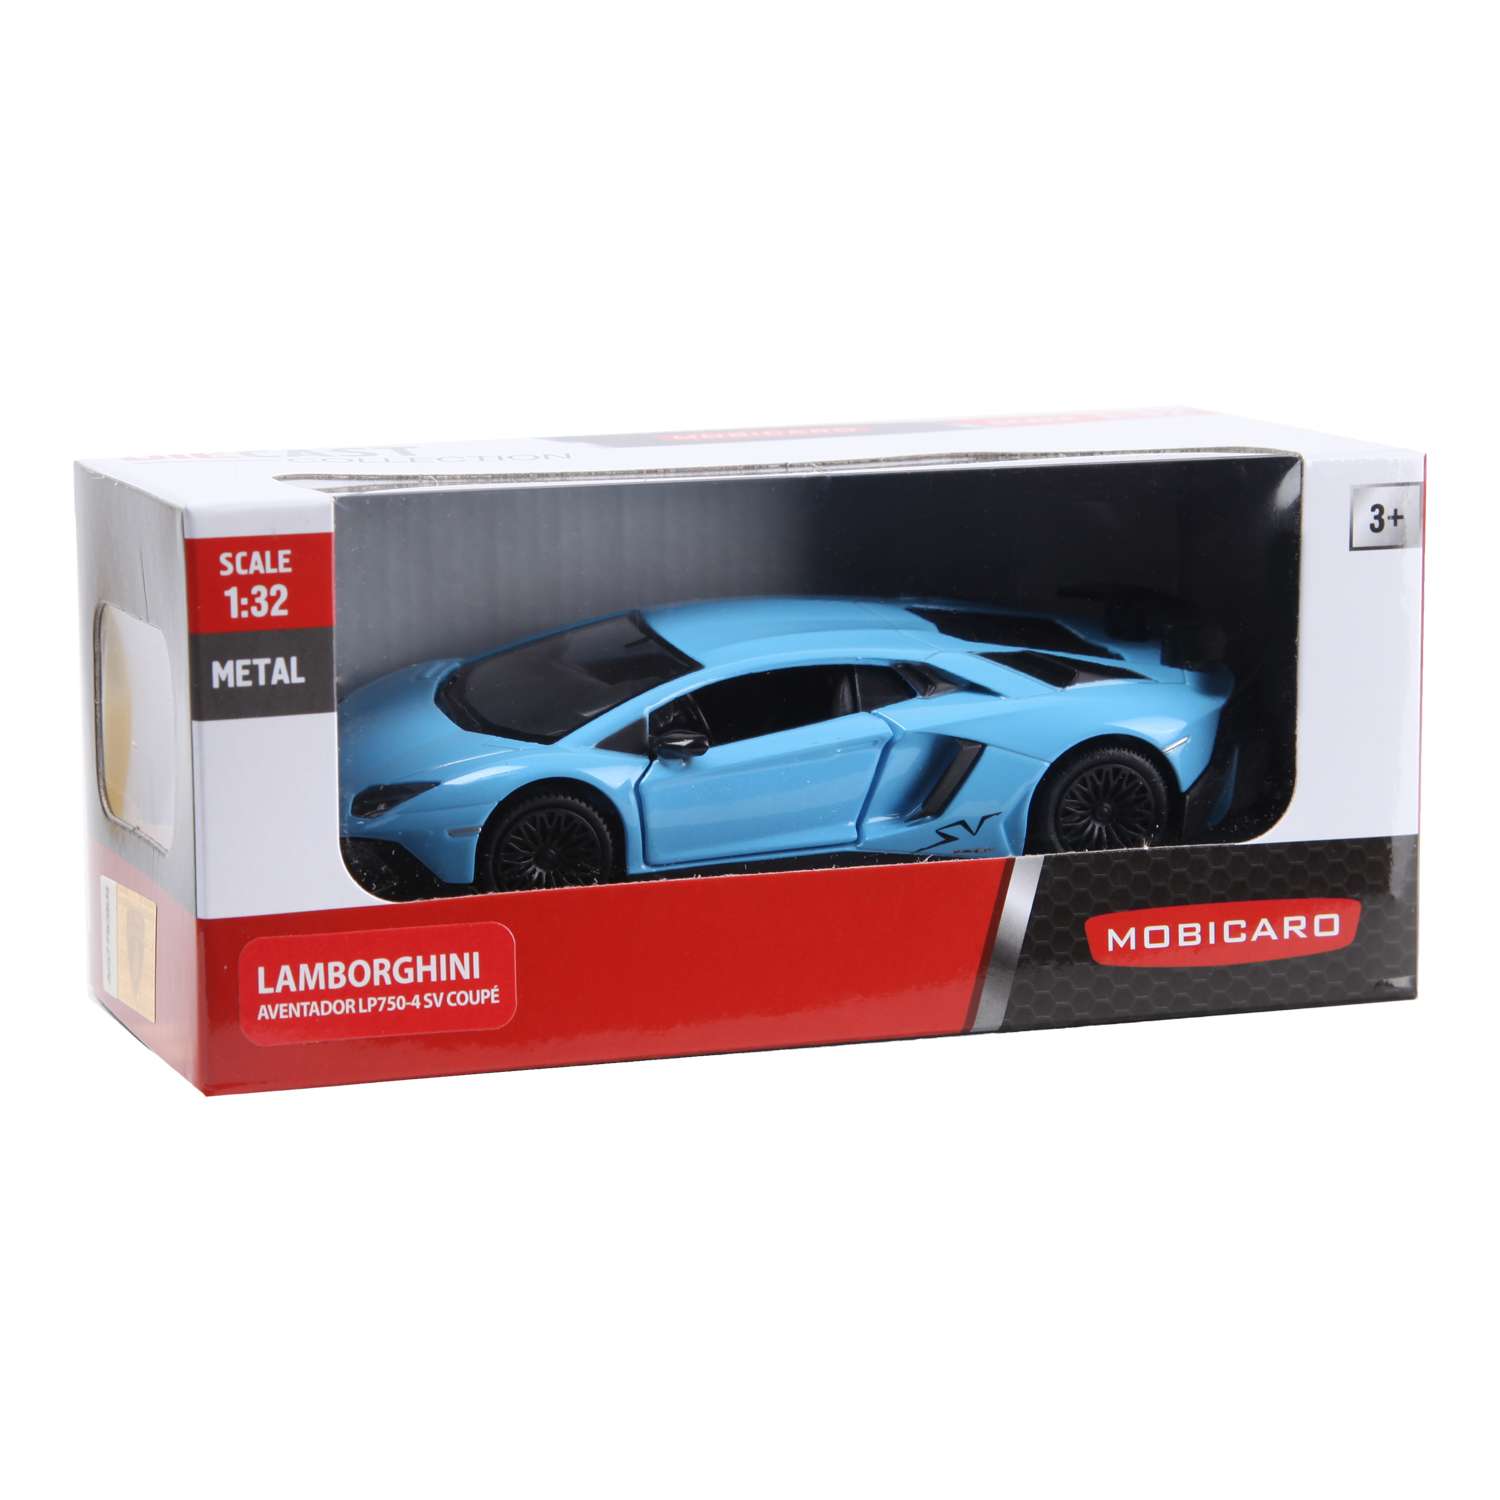 Машинка Mobicaro 1:32 Lamborghini Aventador LP750-4SV в ассортименте 544990 544990 - фото 8